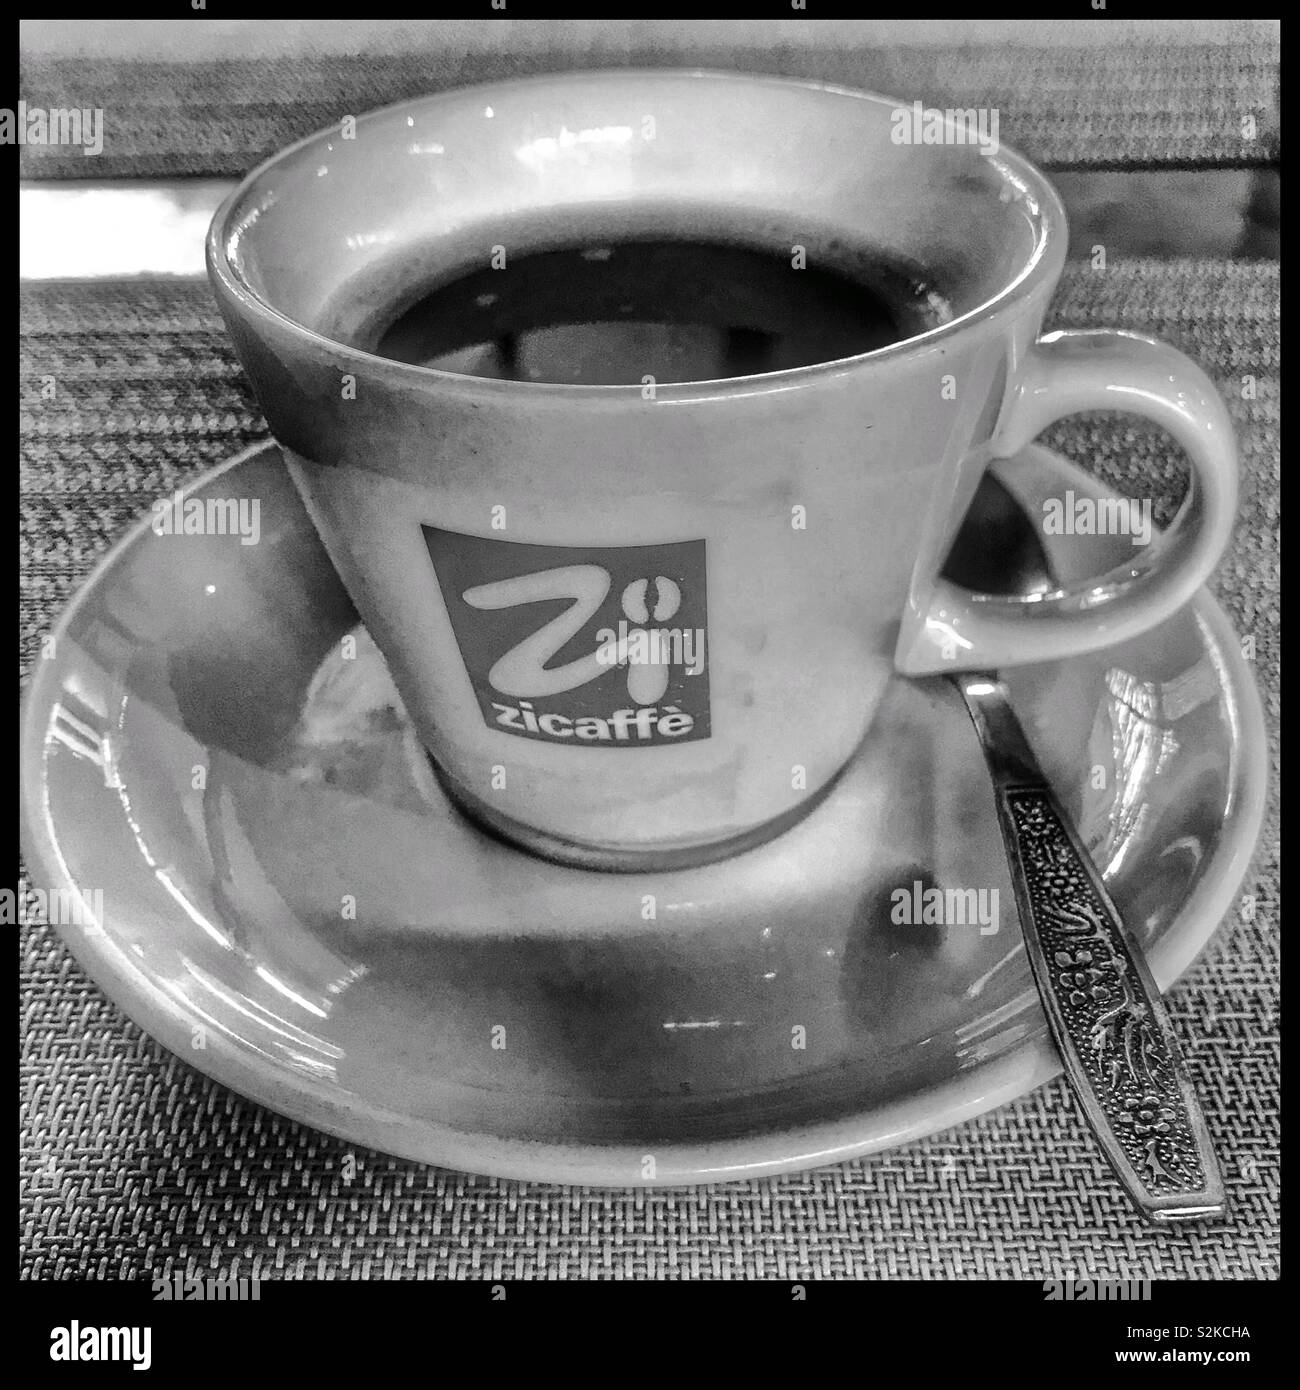 Zicaffe Kaffee in der Tasse. Schwarz-weiß Foto Stockfotografie - Alamy